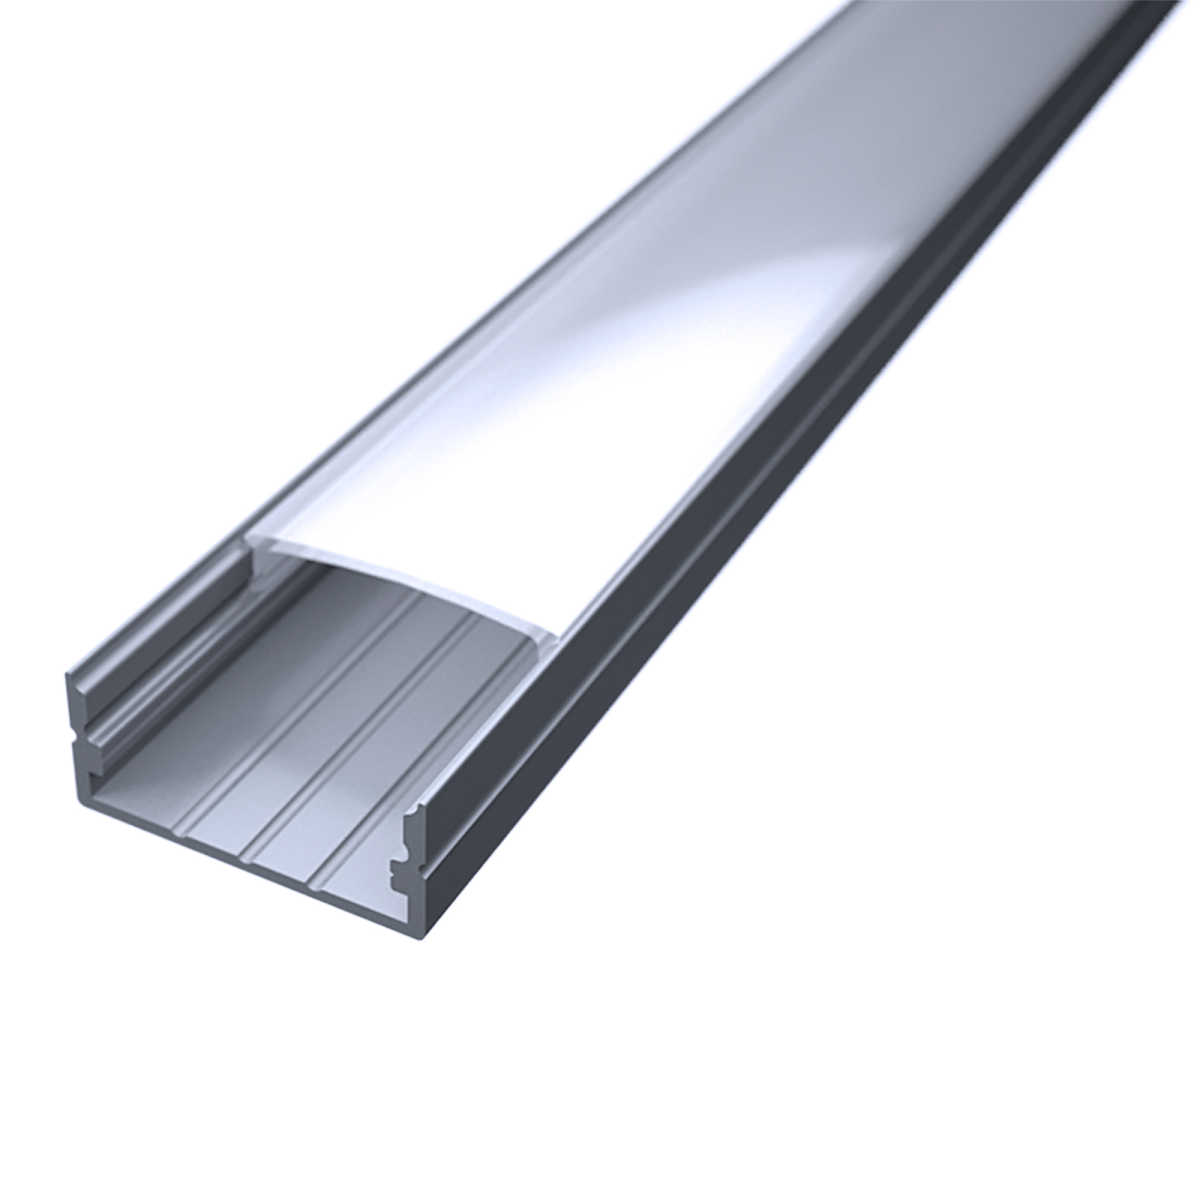 LED Flachprofil "Slim-Line max" | Abdeckung diffus | Zuschnitt auf 34cm |